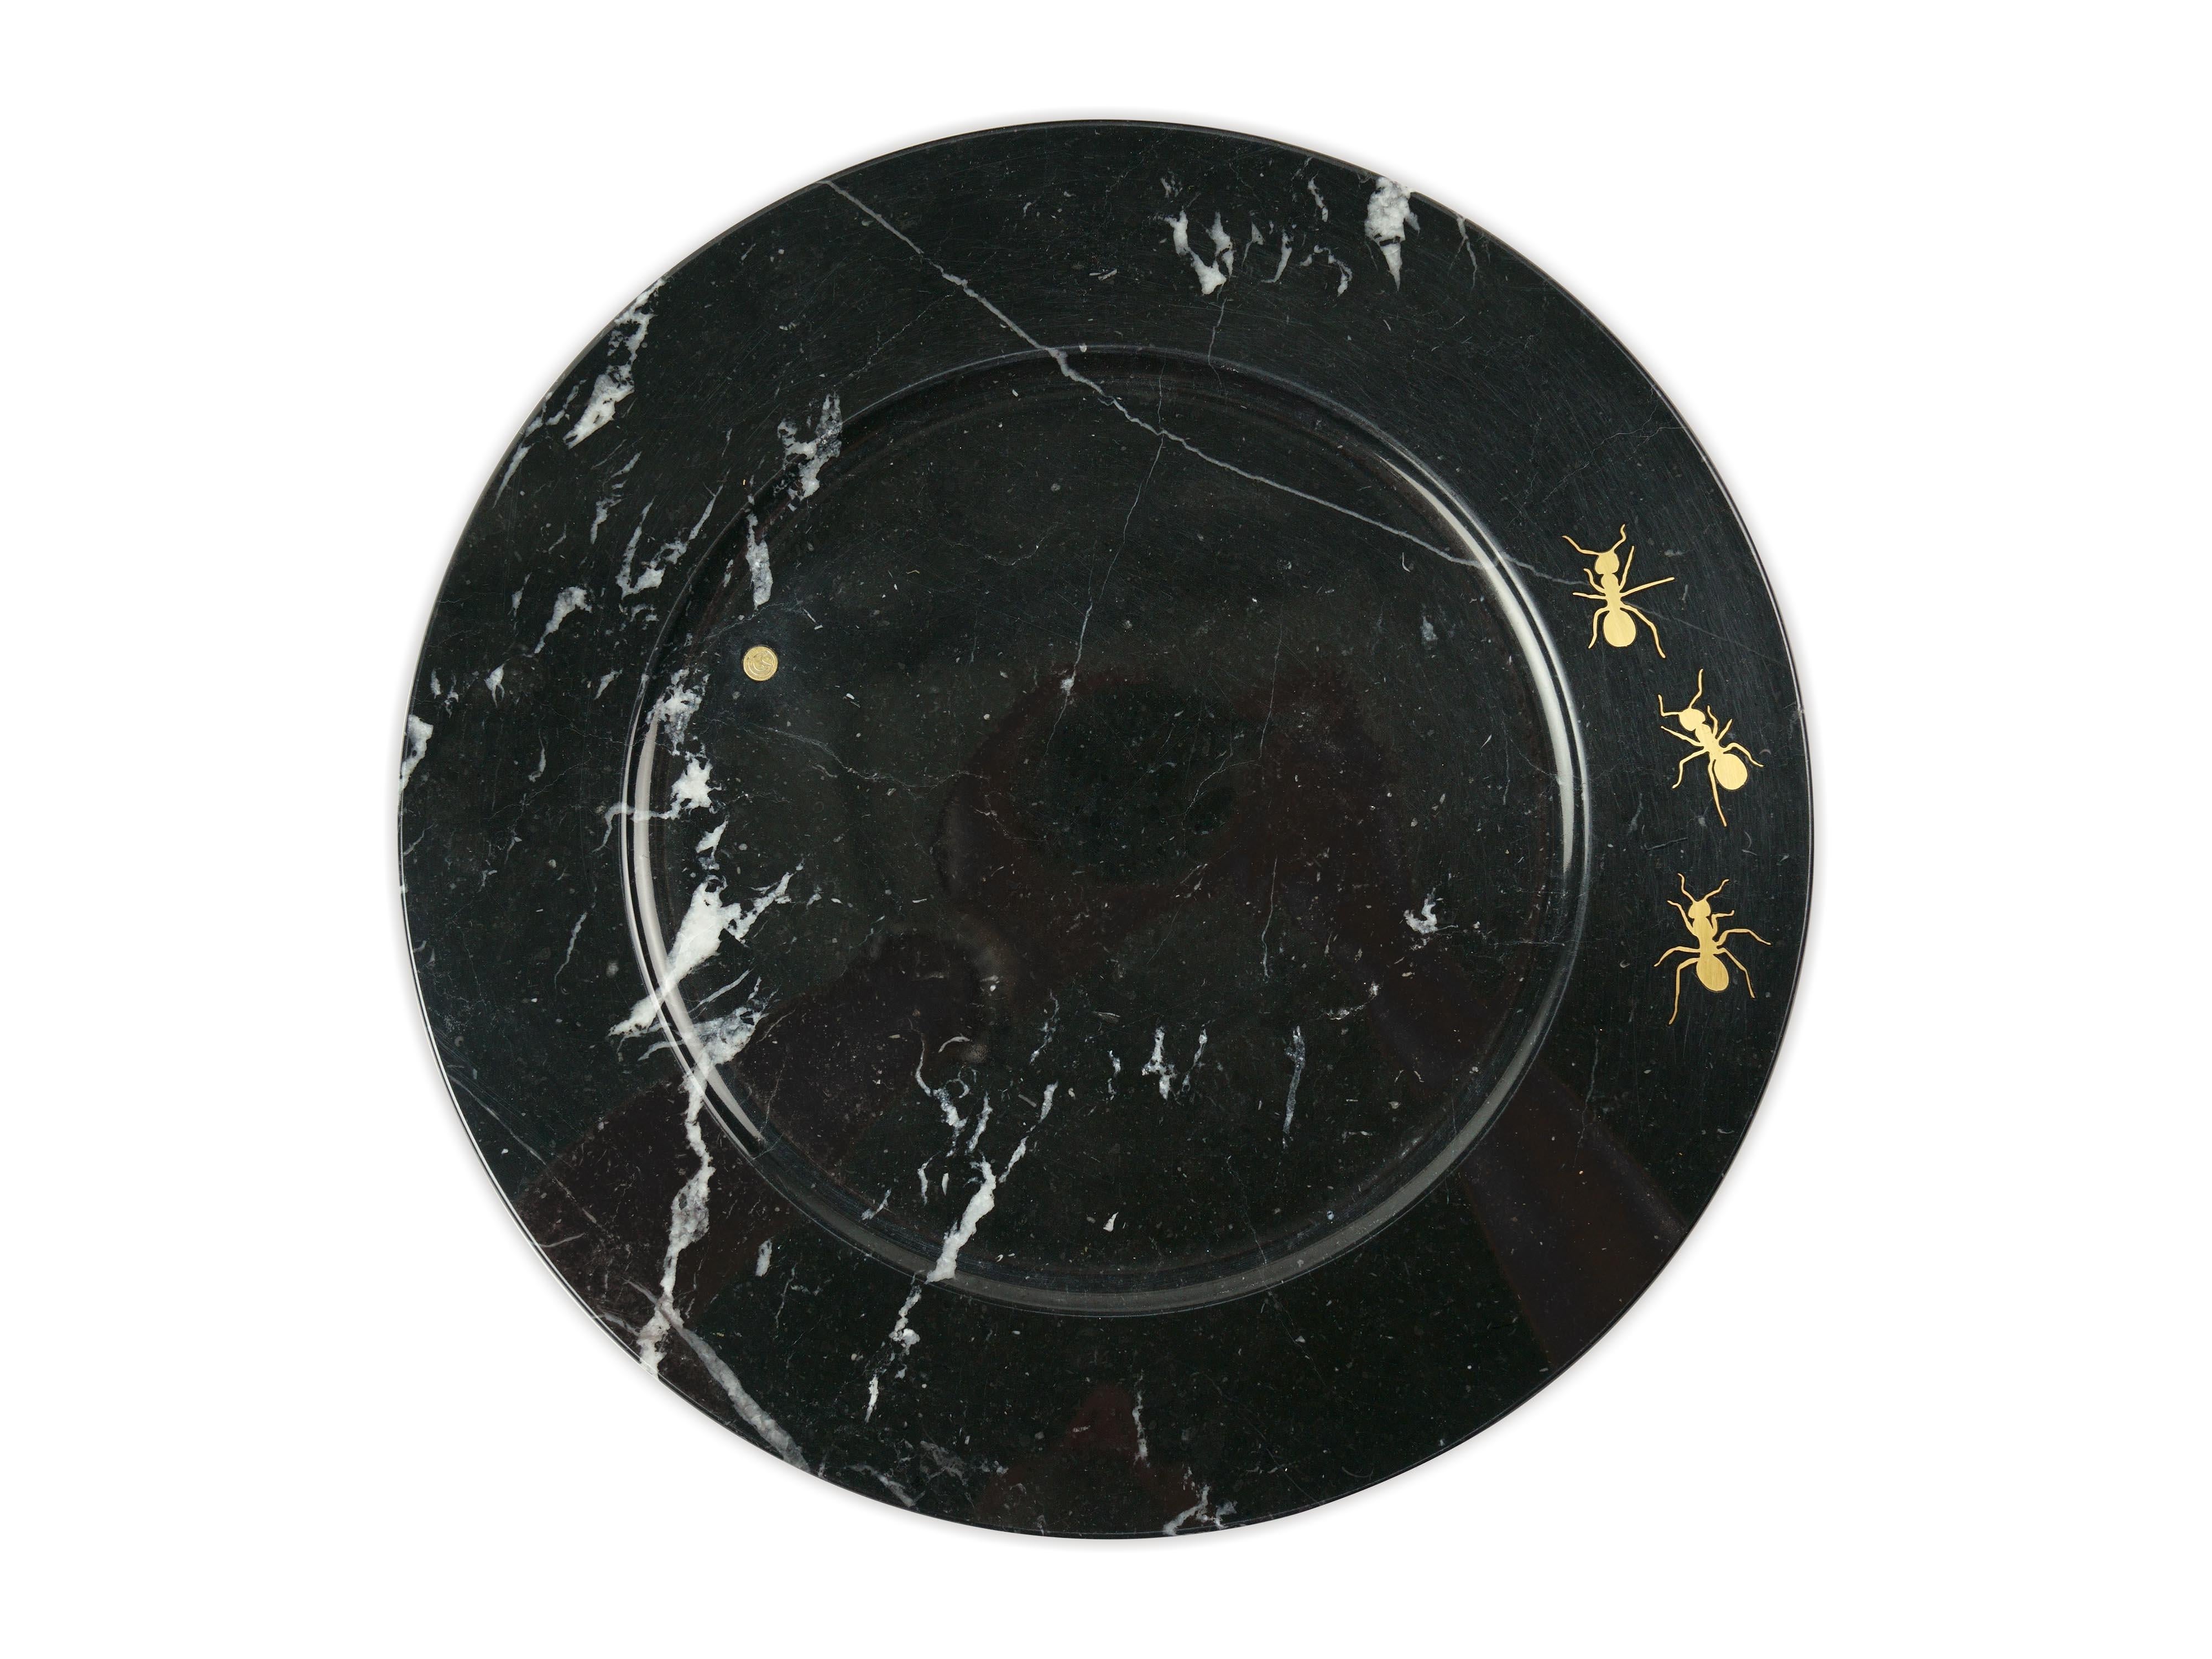 
Ensemble de 4 assiettes de présentation sculptées à la main en marbre noir Marquina avec 3 fourmis en laiton incrustées. Utilisation multiple en tant qu'assiettes de présentation, assiettes, plateaux et plateaux de service. 

Dimensions : D 33, H